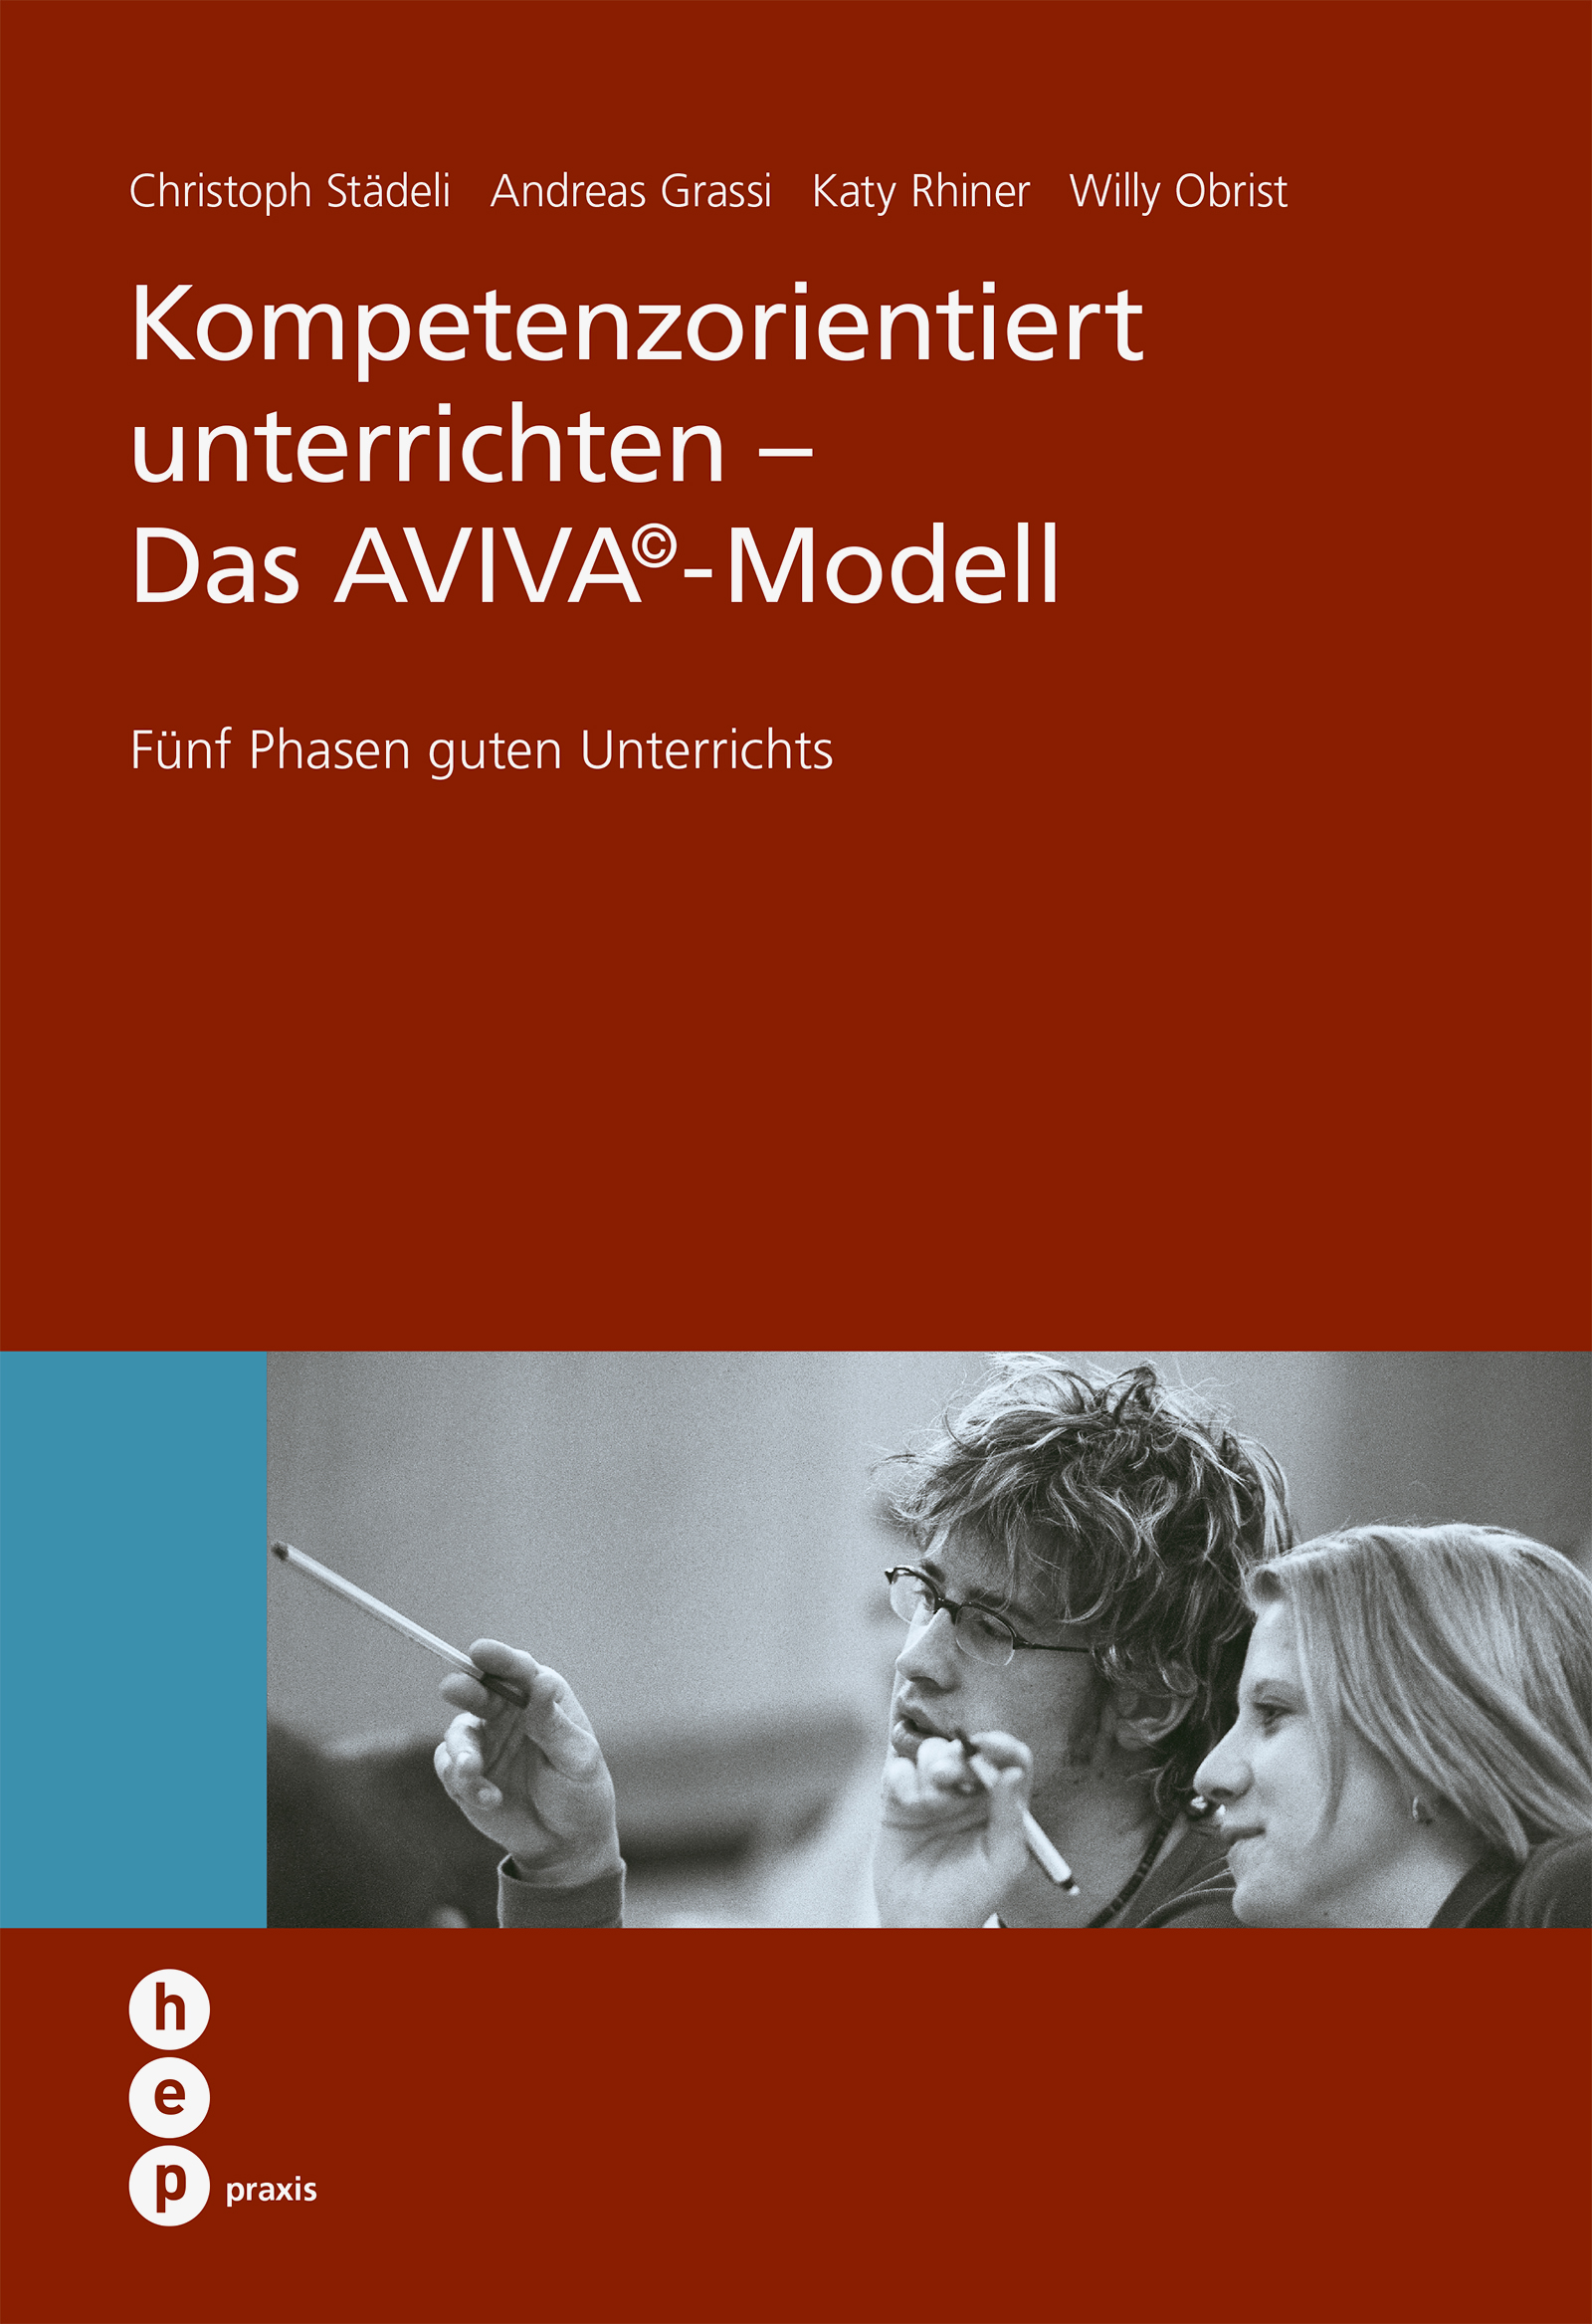 Produktabbildung von Kompetenzorientiert unterrichten - Das AVIVA©-Modell